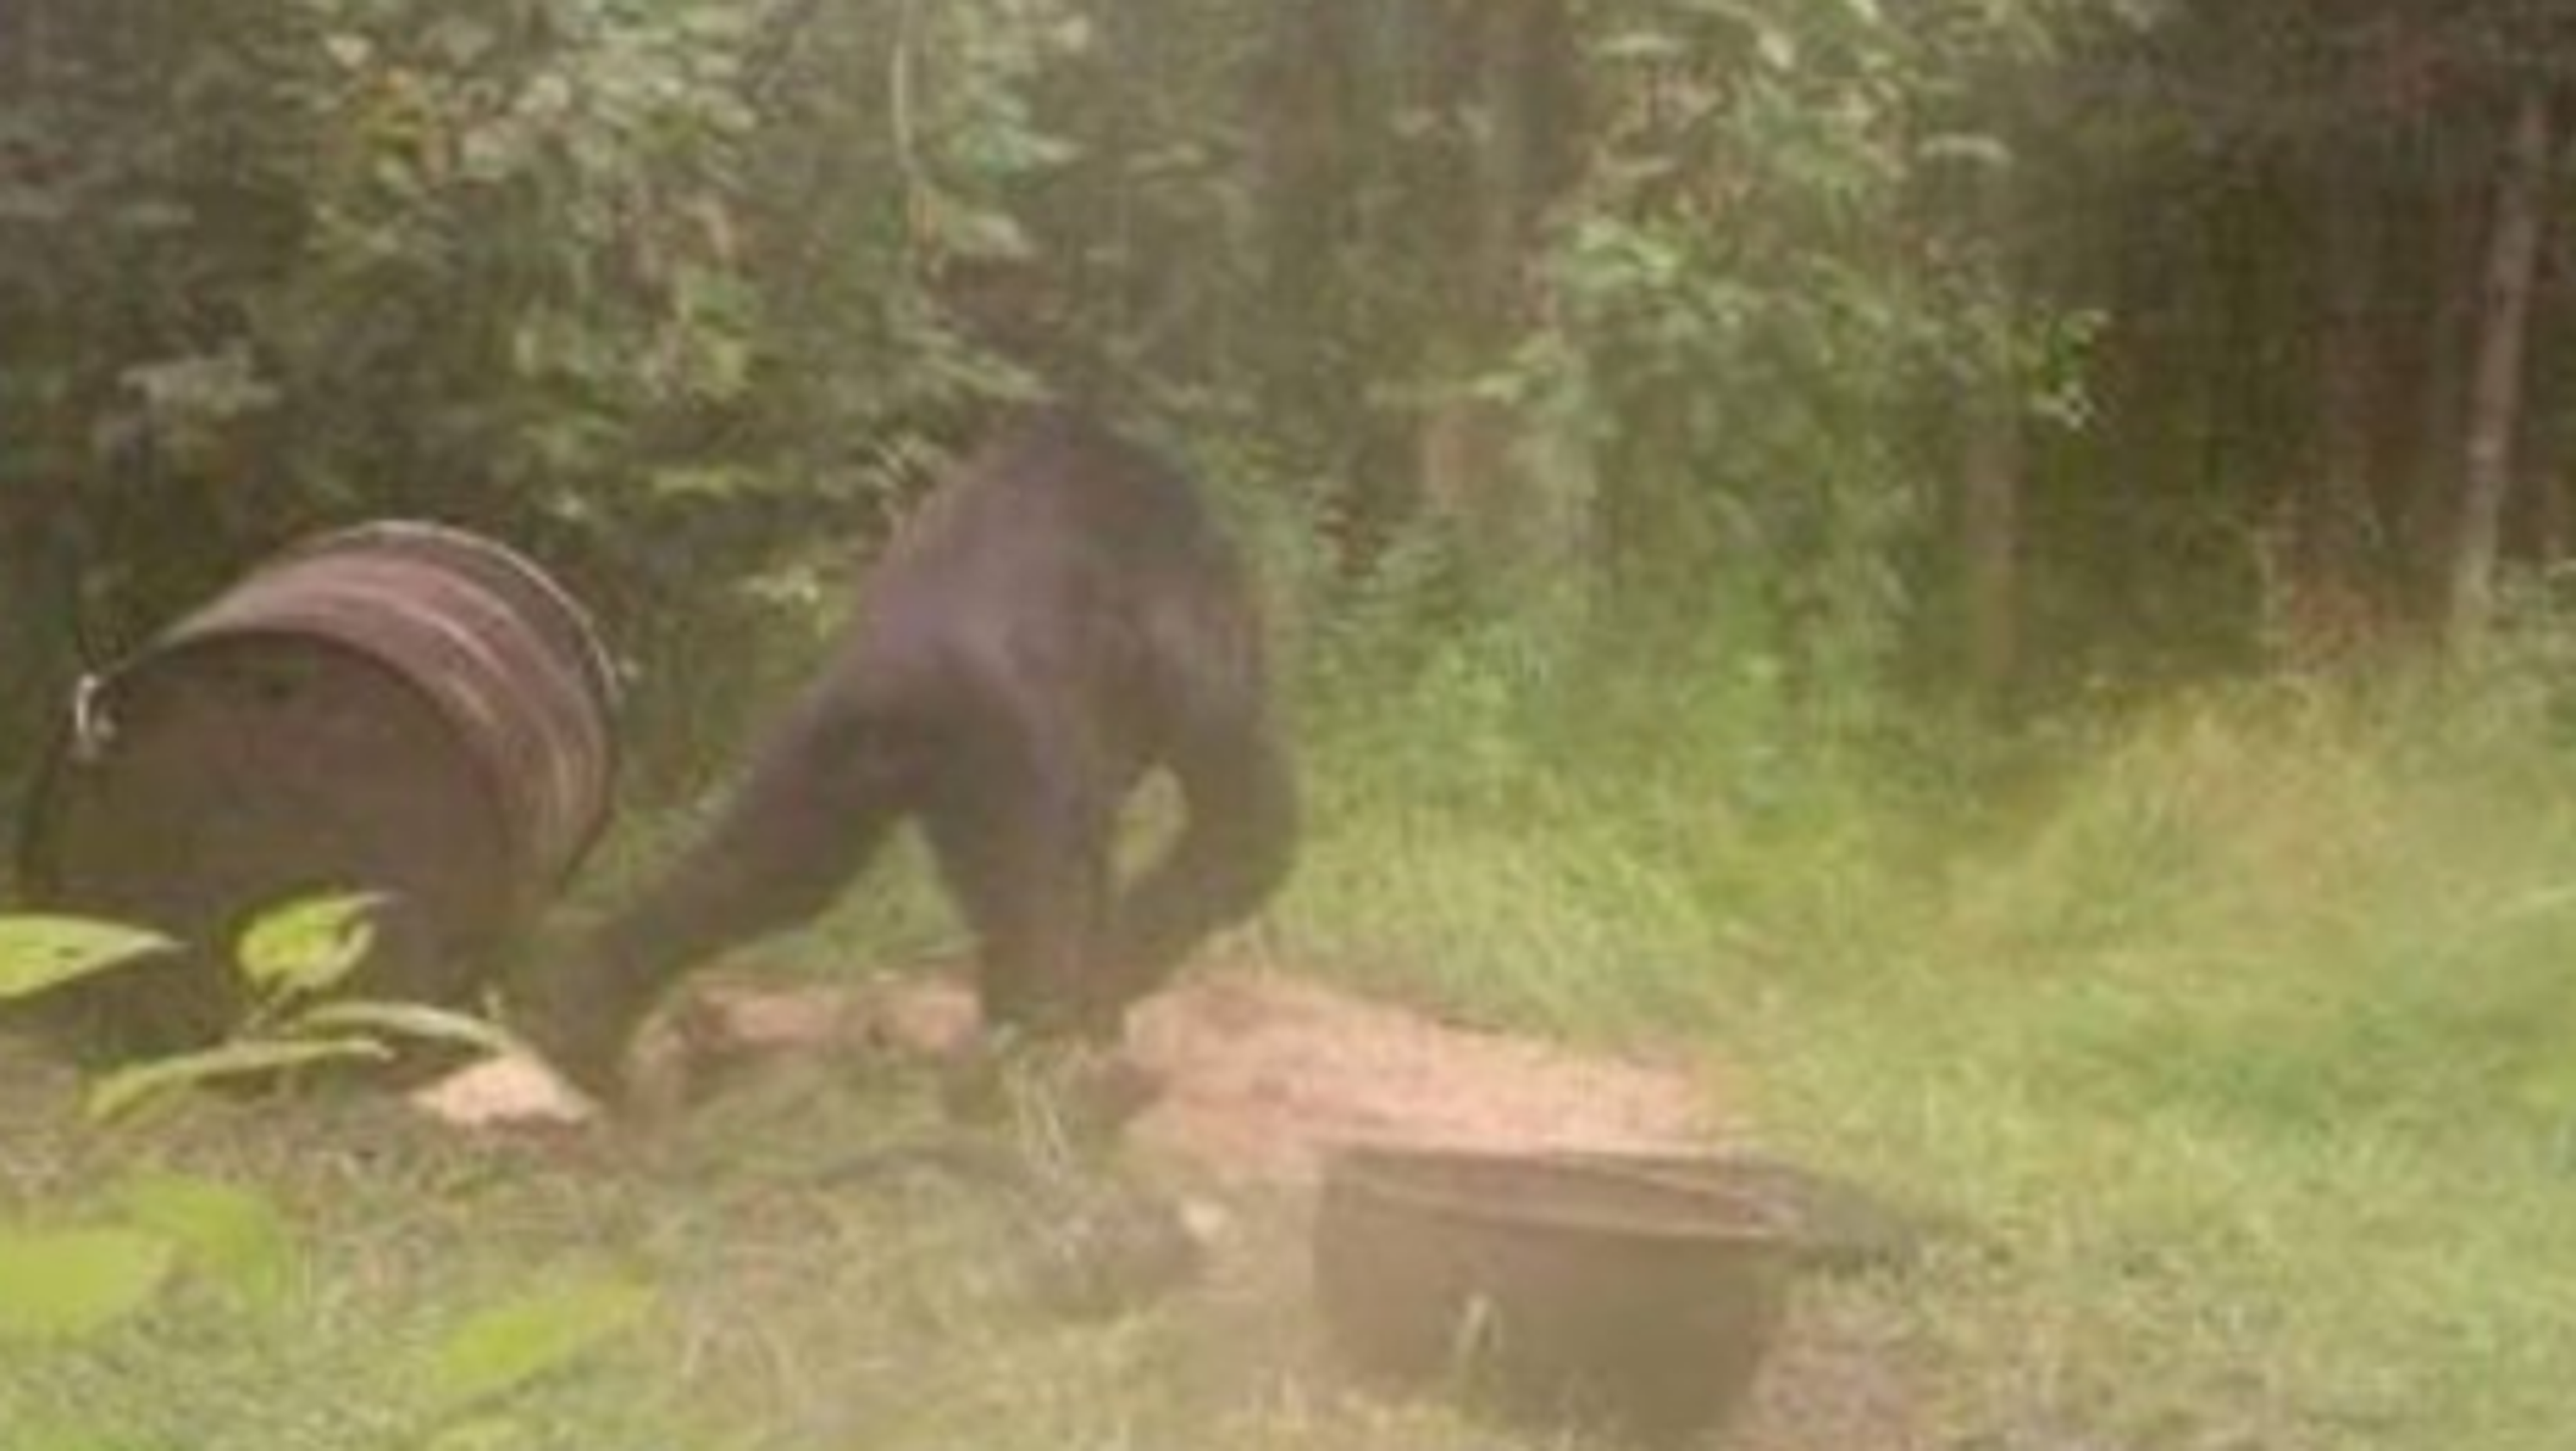 Bigfoot in the U.P.? Trail cam photo spurs debate